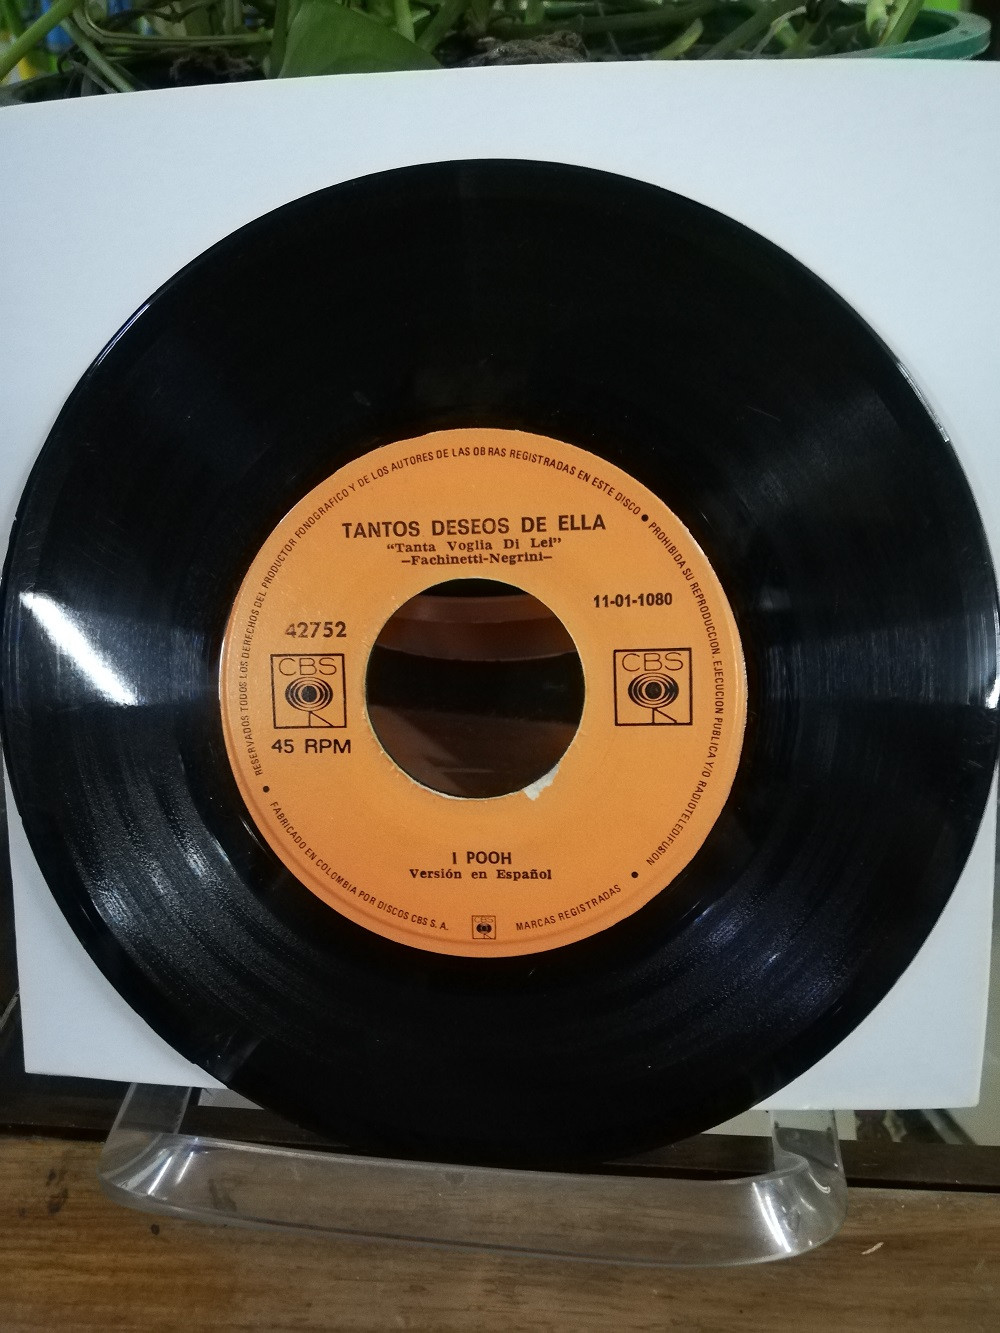 Imagen LP 45 RPM I POOH - TANTOS DESEOS DE ELLA/TODO A LAS TRES 2